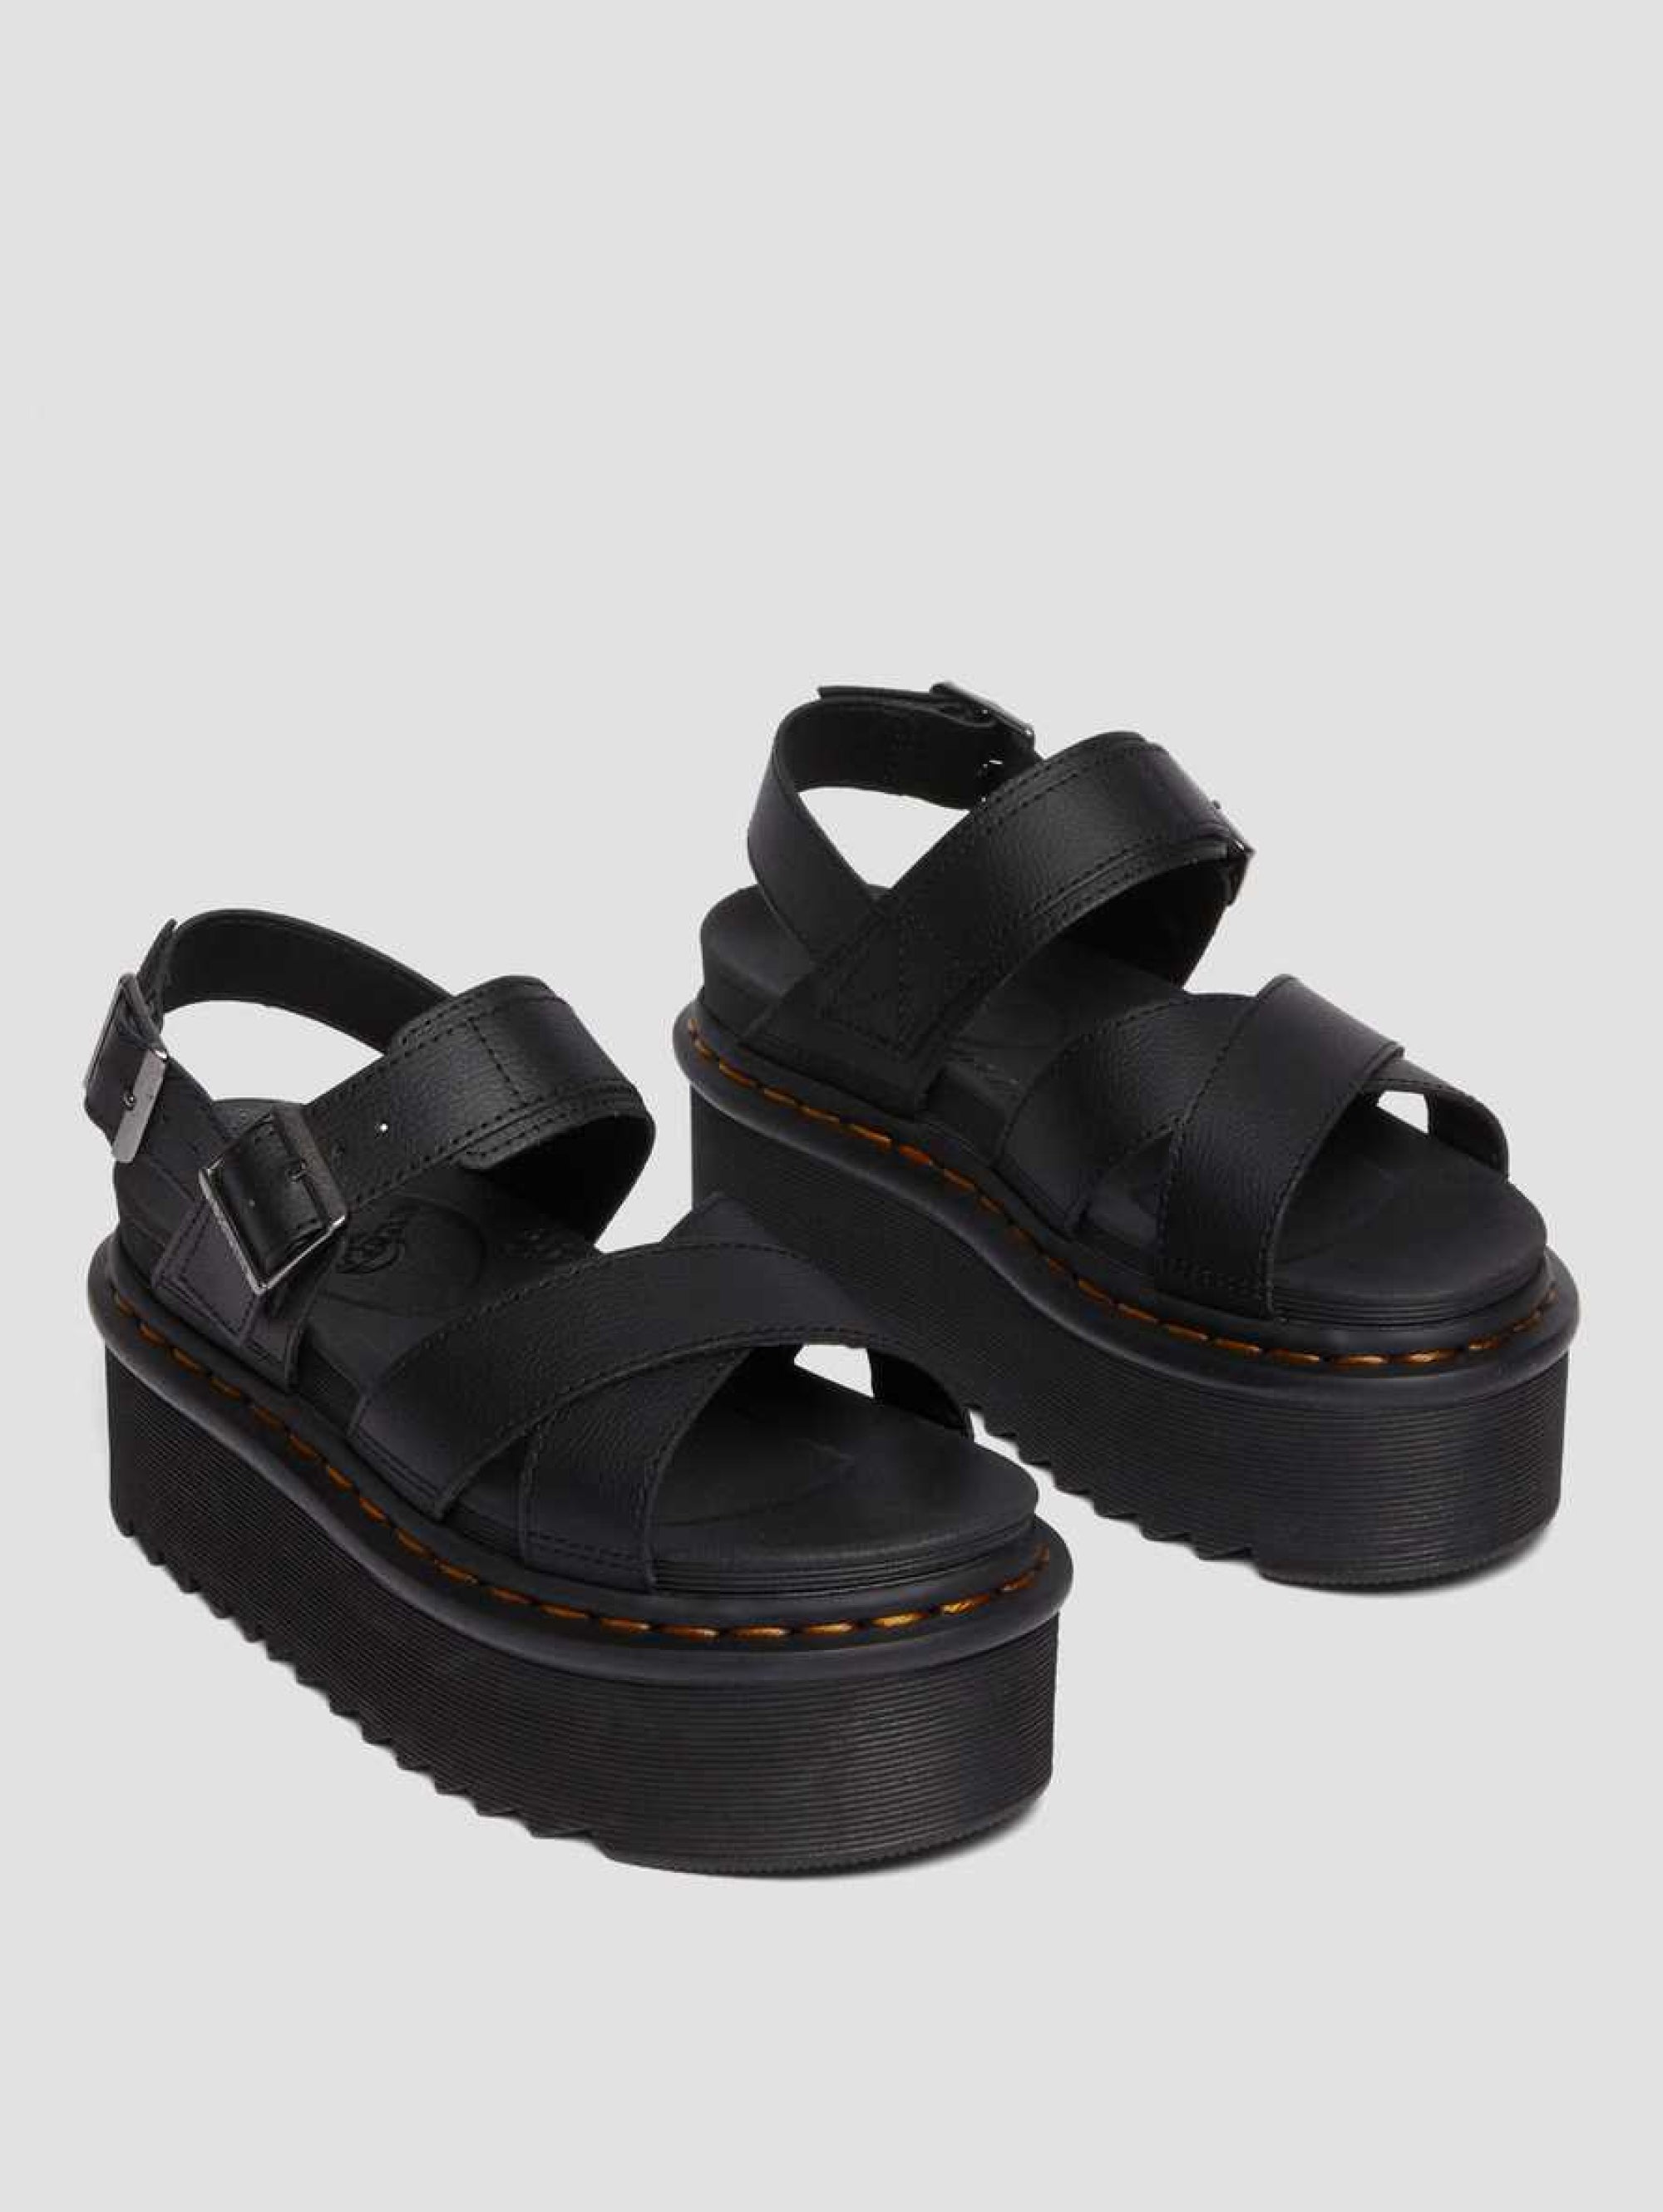 Sandals with Black Voss Quad Platform Sole